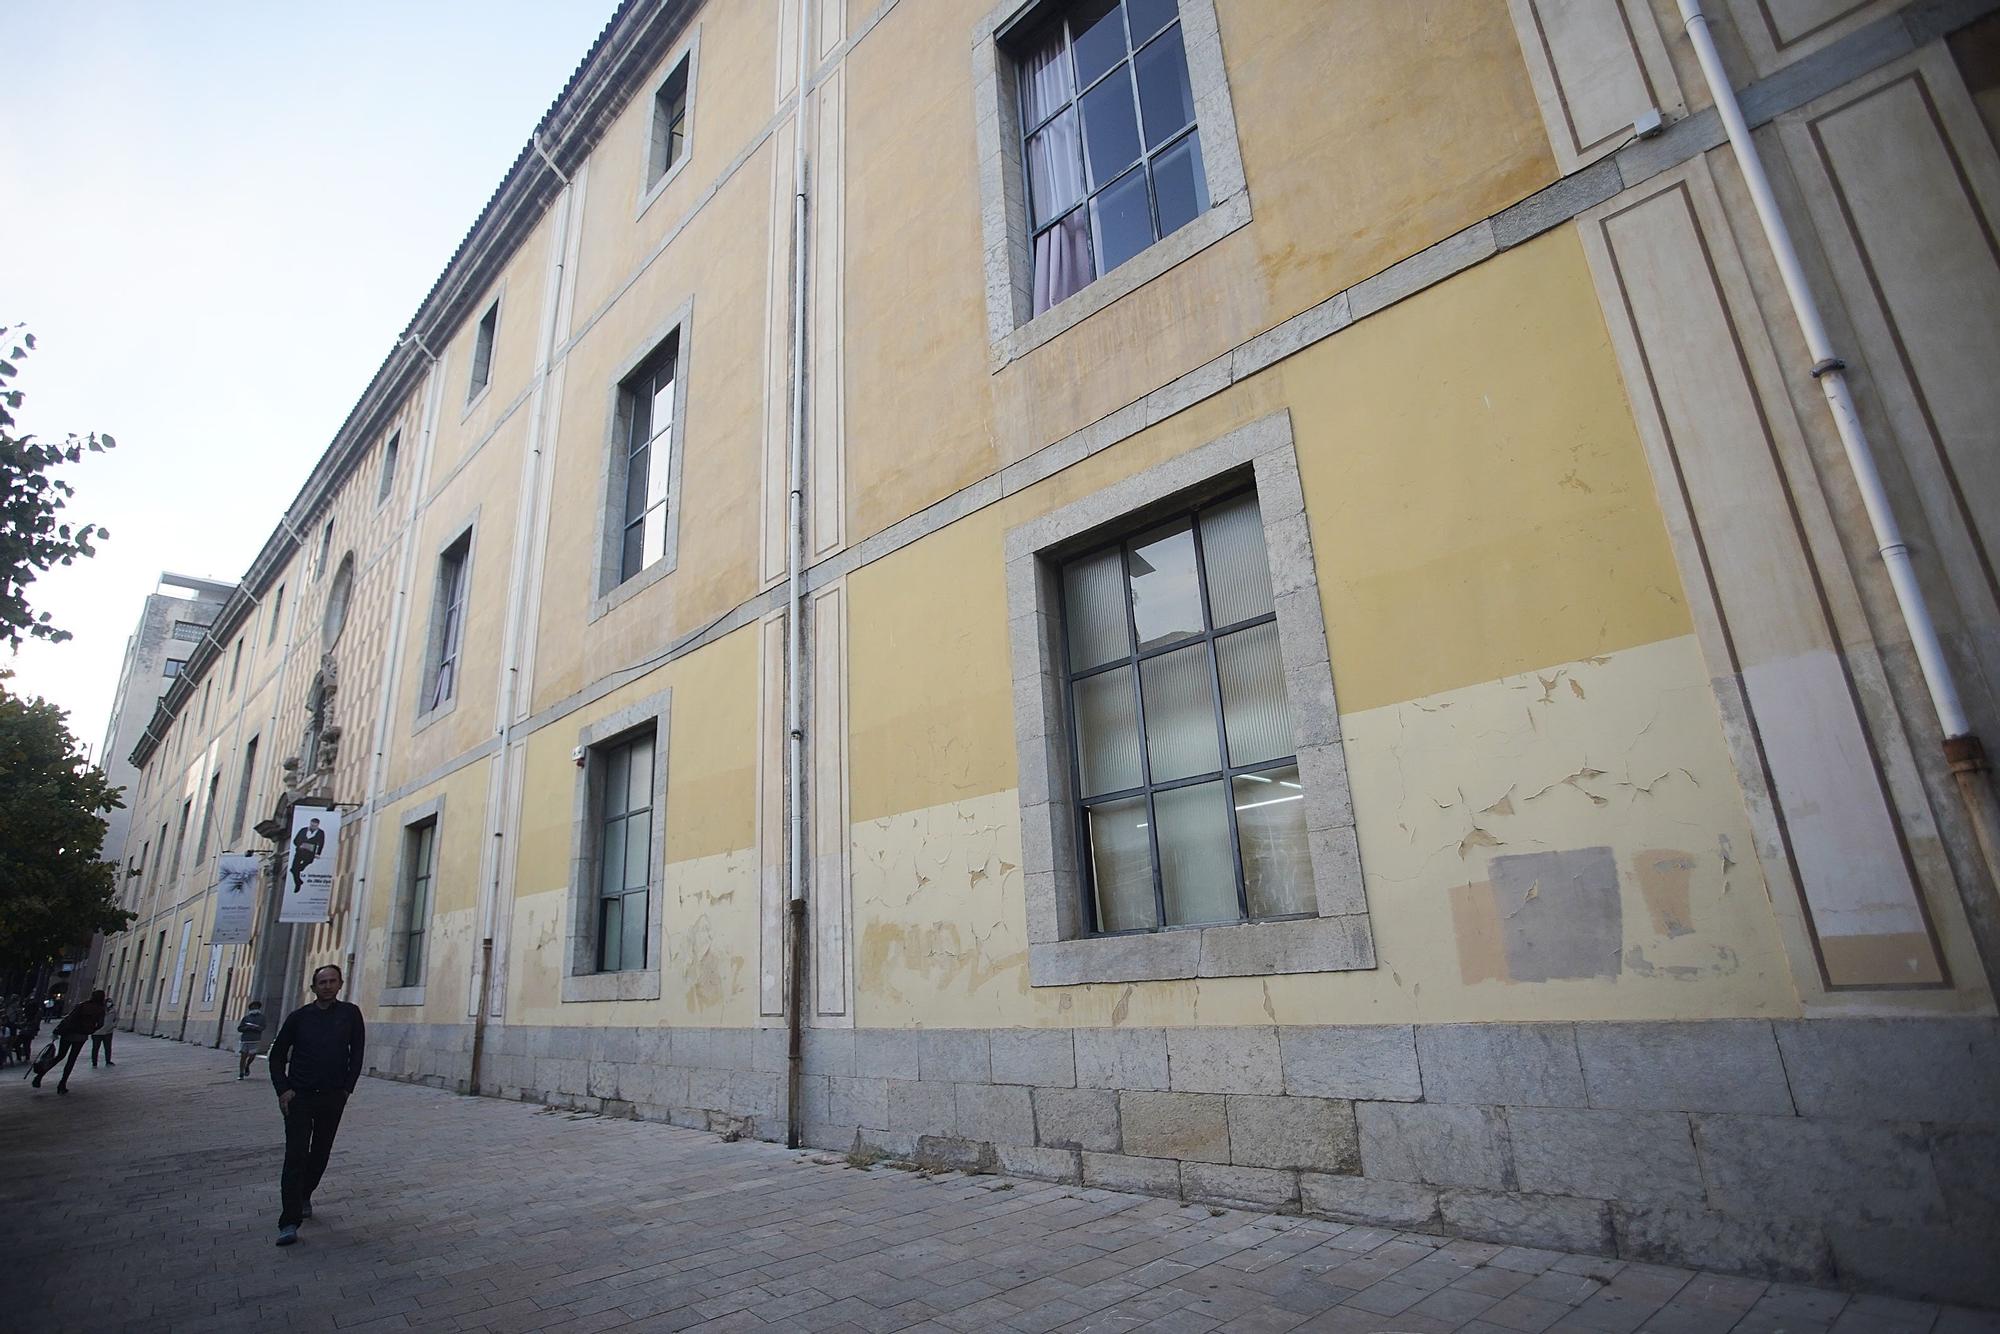 La Diputació reclama pressupost a la Generalitat per reformar la Casa de Cultura de Girona